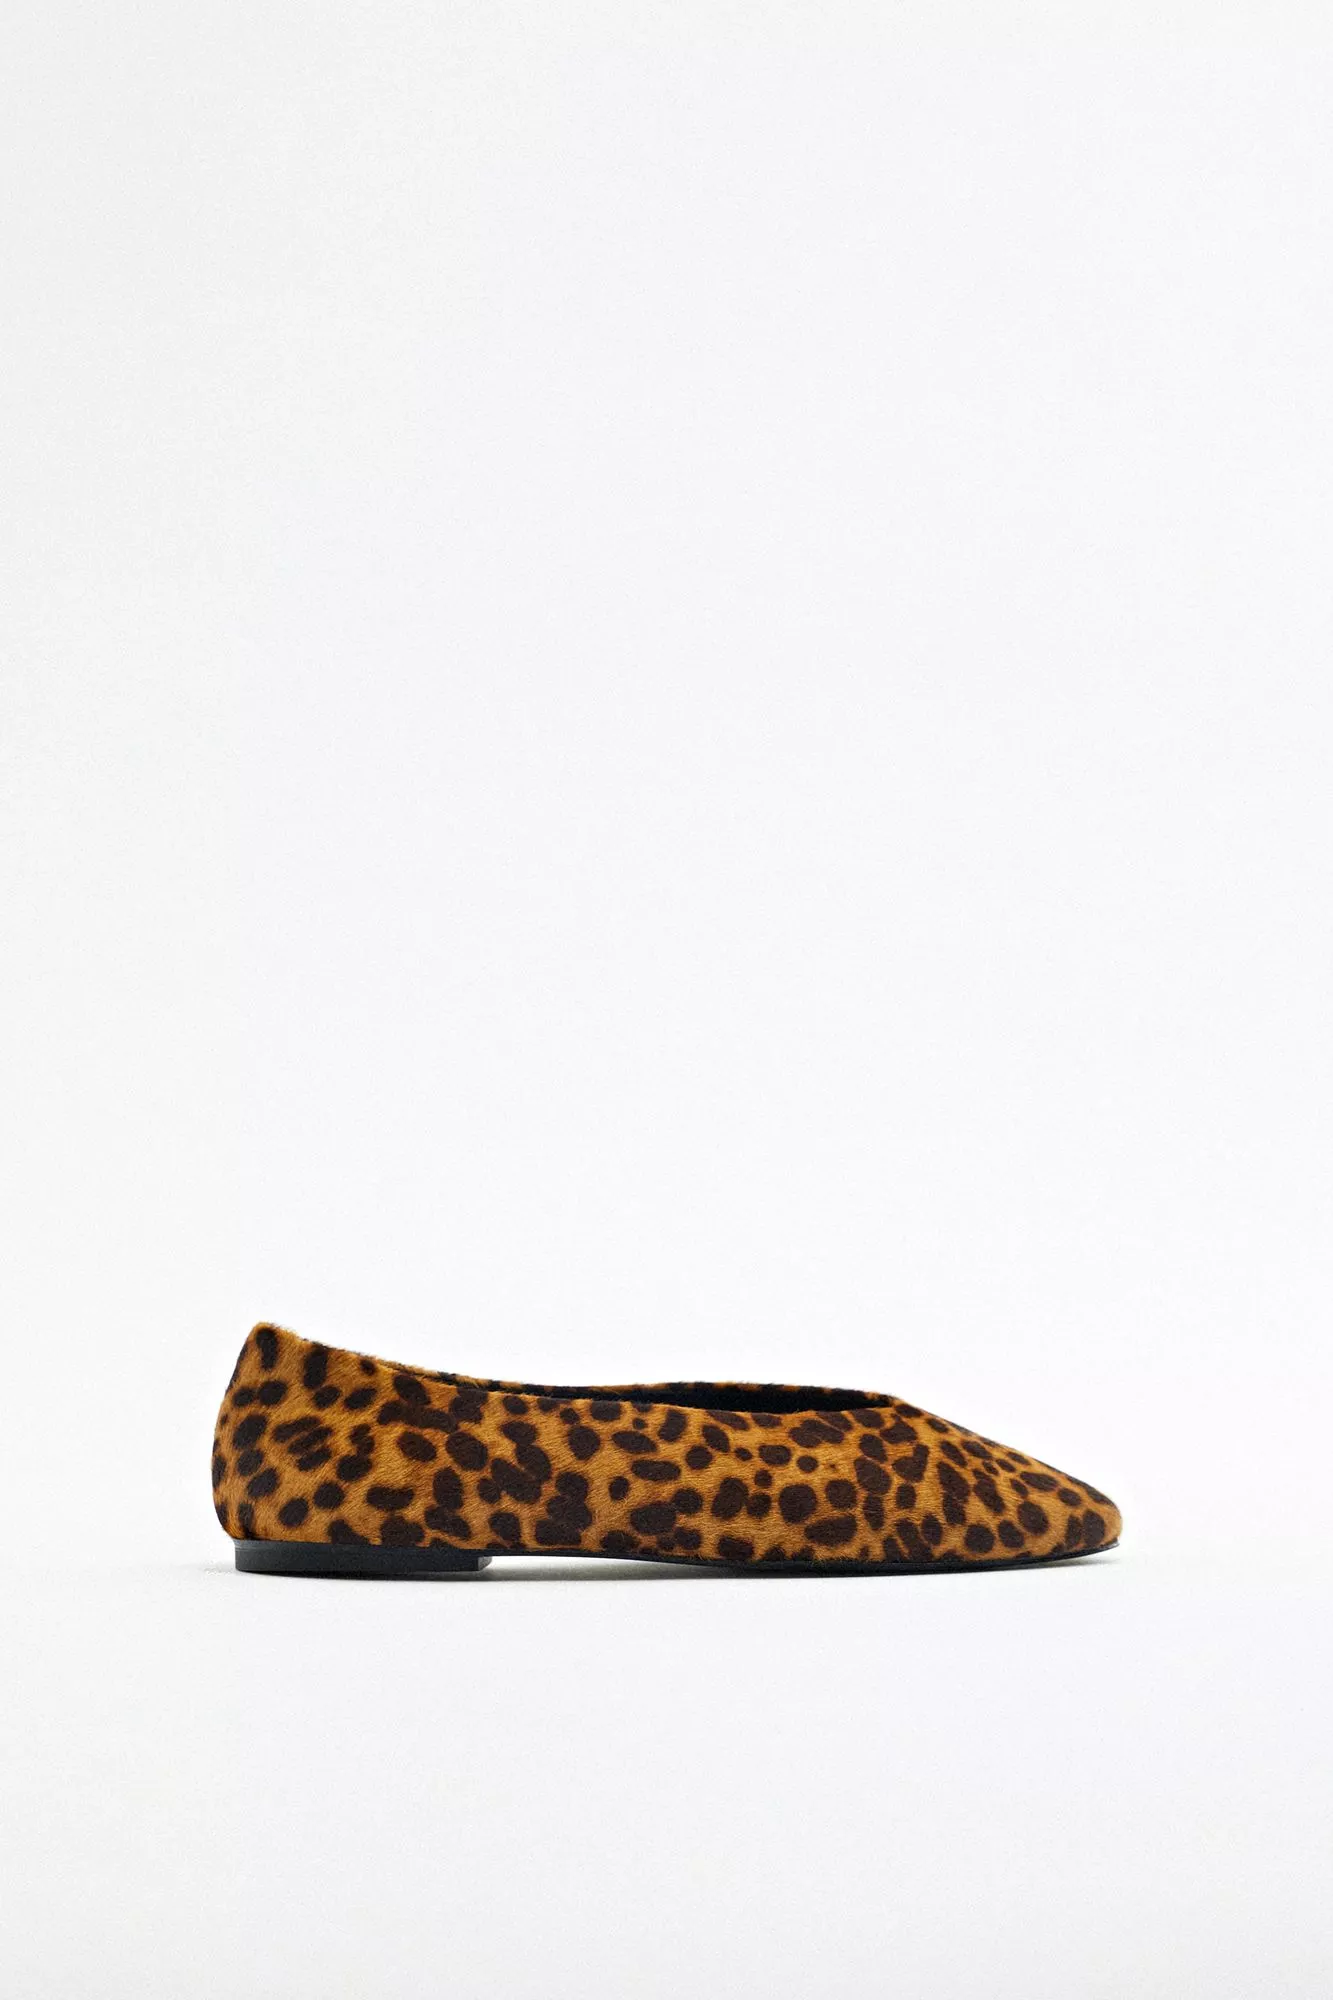 Leopardikuosiset nahkaballerinat 55,95 e, Zara.